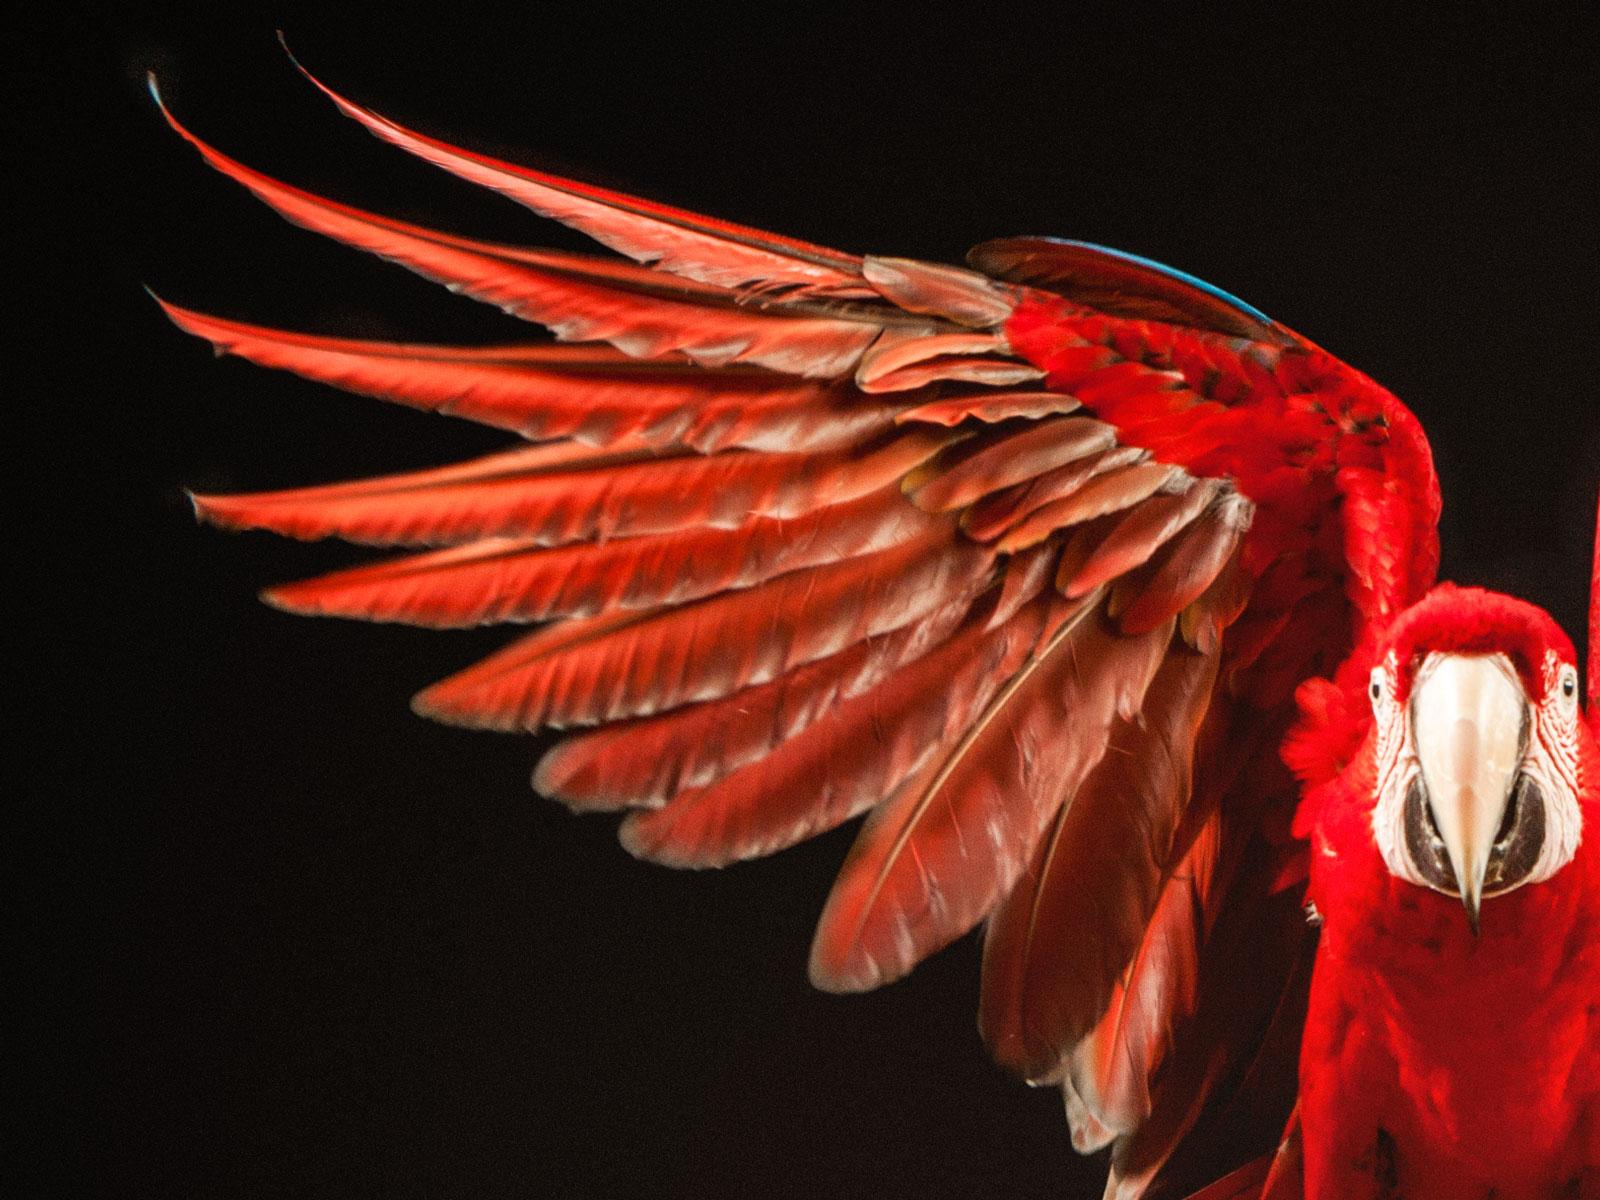  Macaw #7 - Impression oiseau d'art contemporain en édition limitée signée, rouge - Contemporain Photograph par Tim Platt